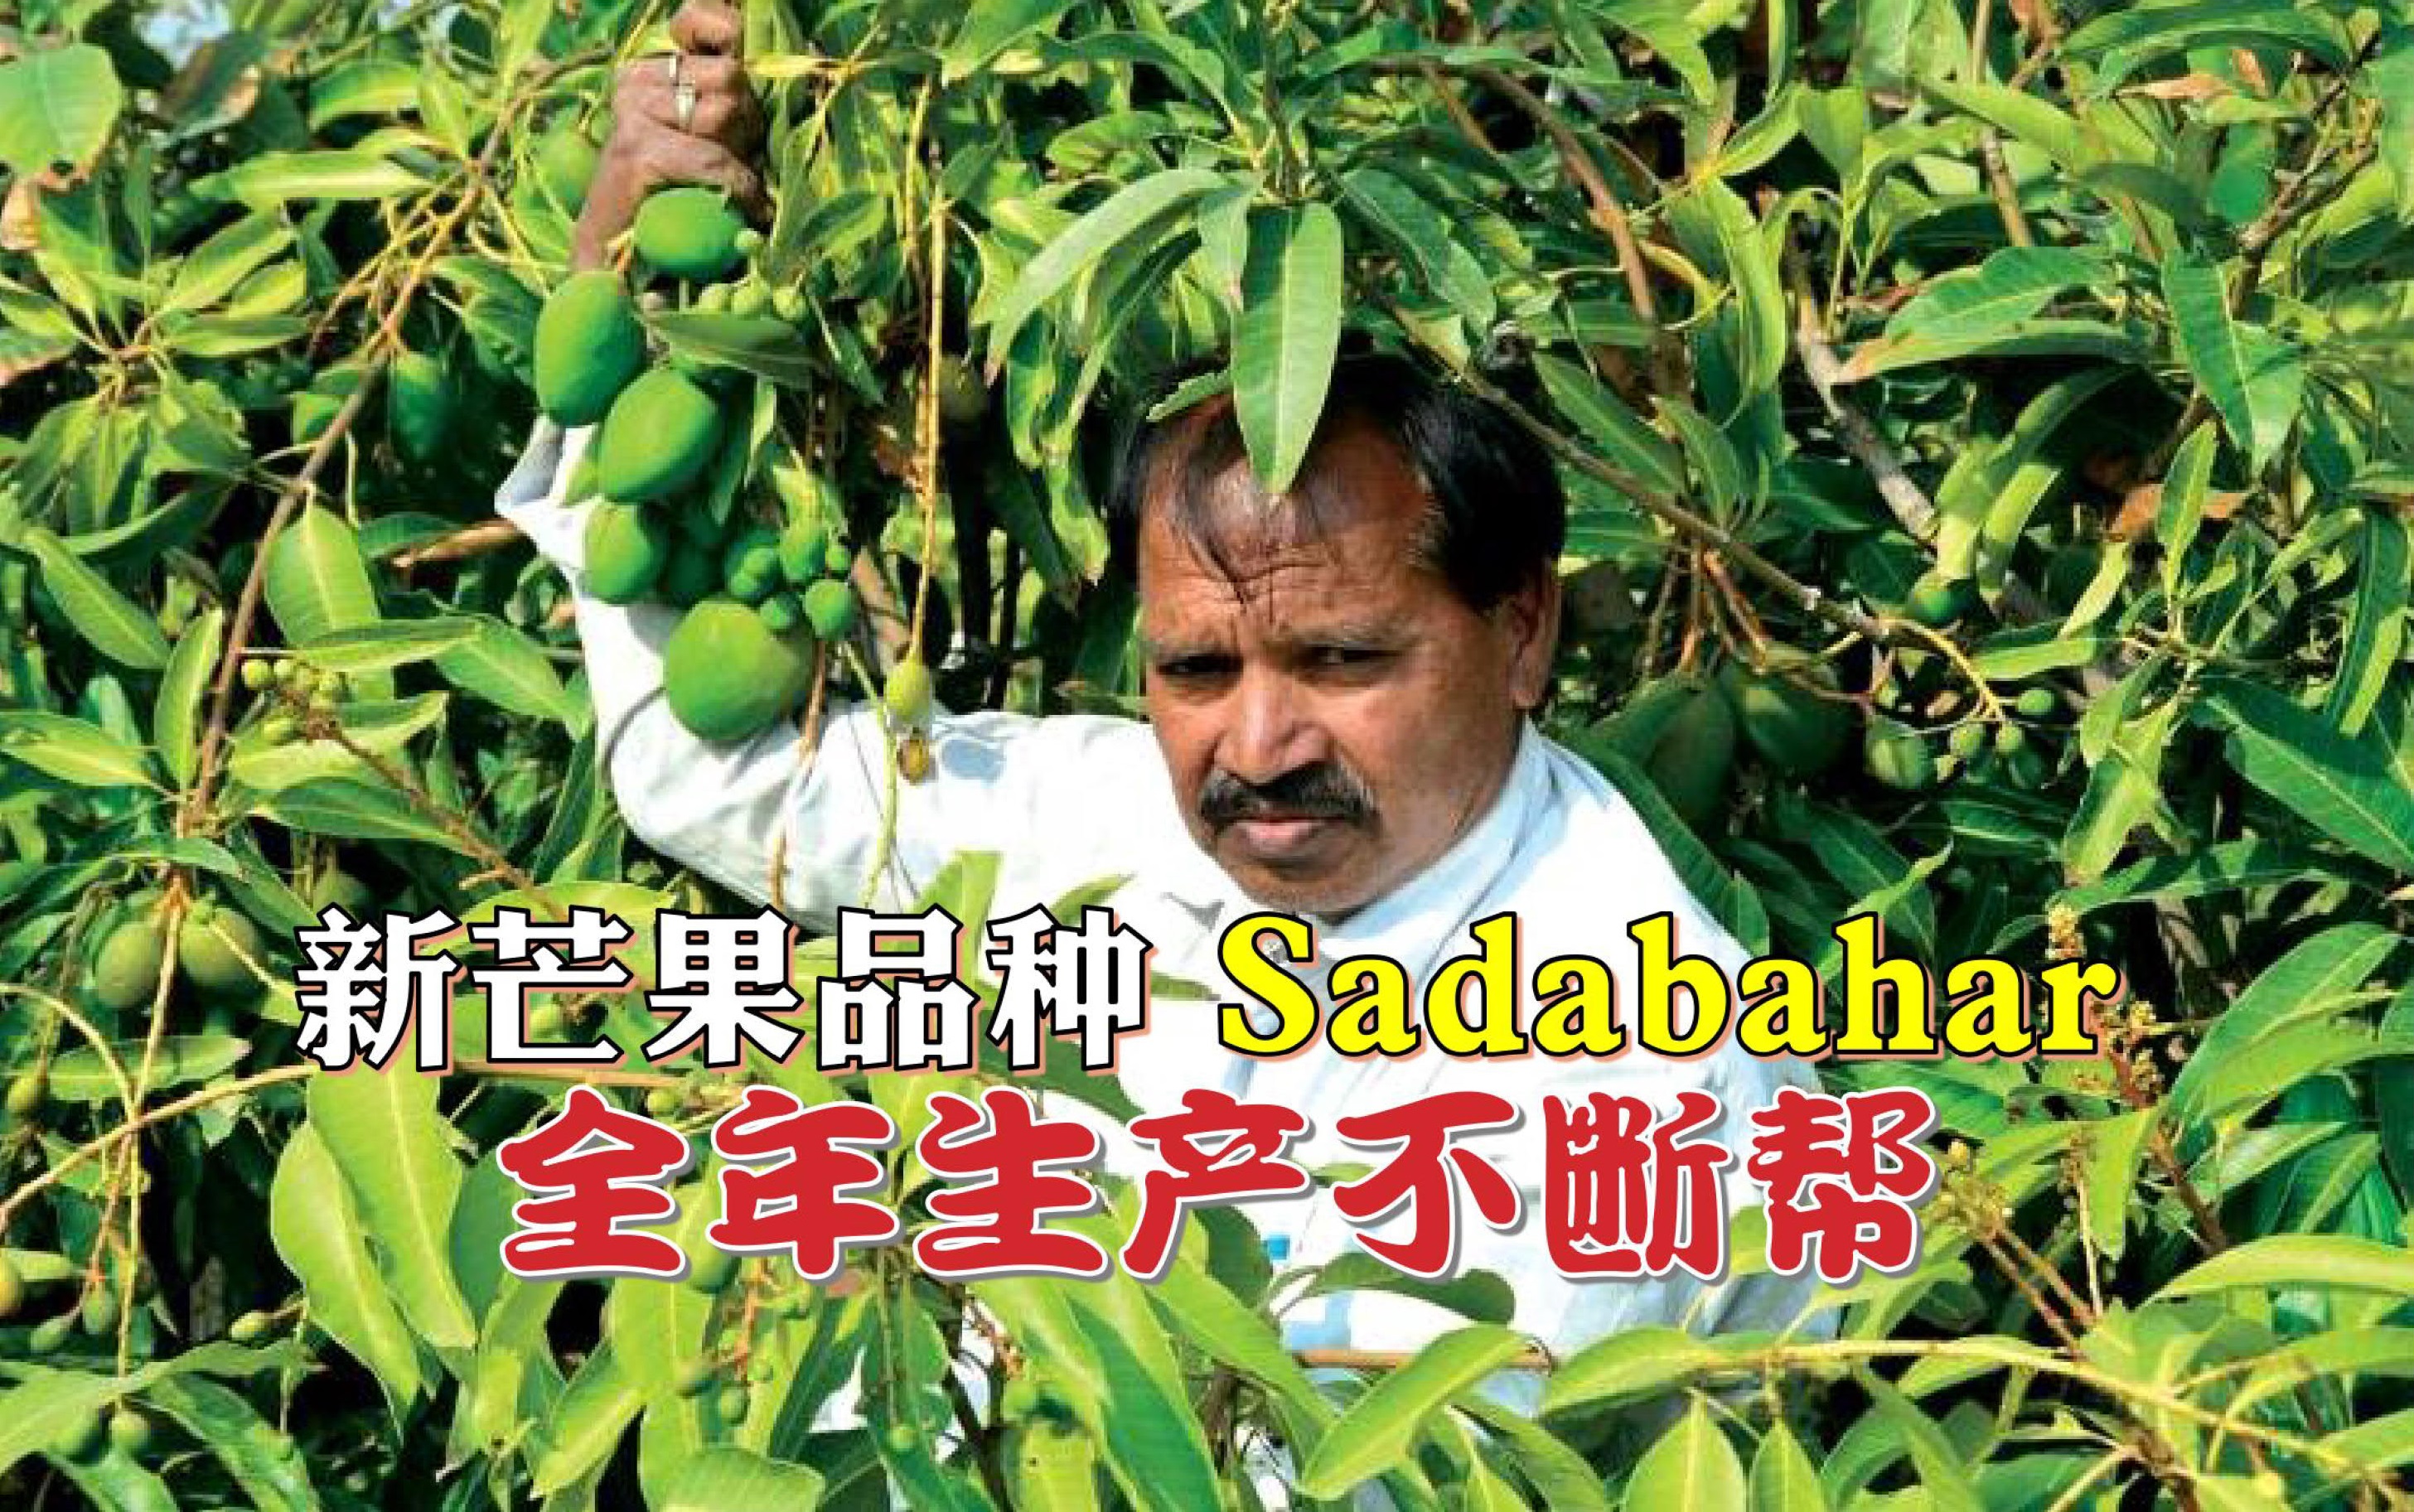 印度农友培育新芒果品种 Sadabahar全年生产不断帮 - 农牧世界